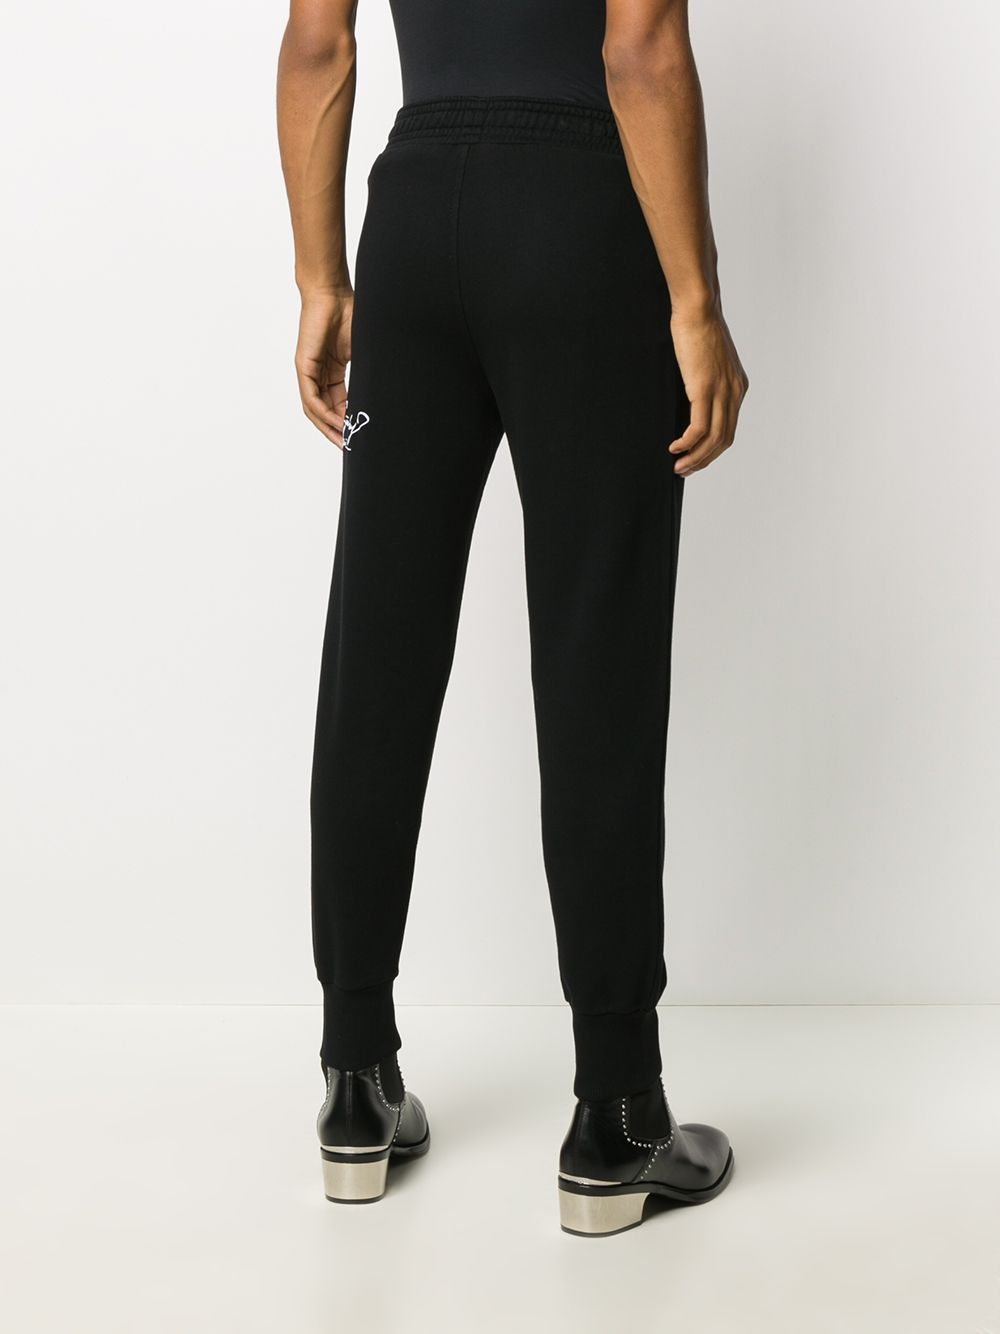 фото Givenchy спортивные брюки с надписью